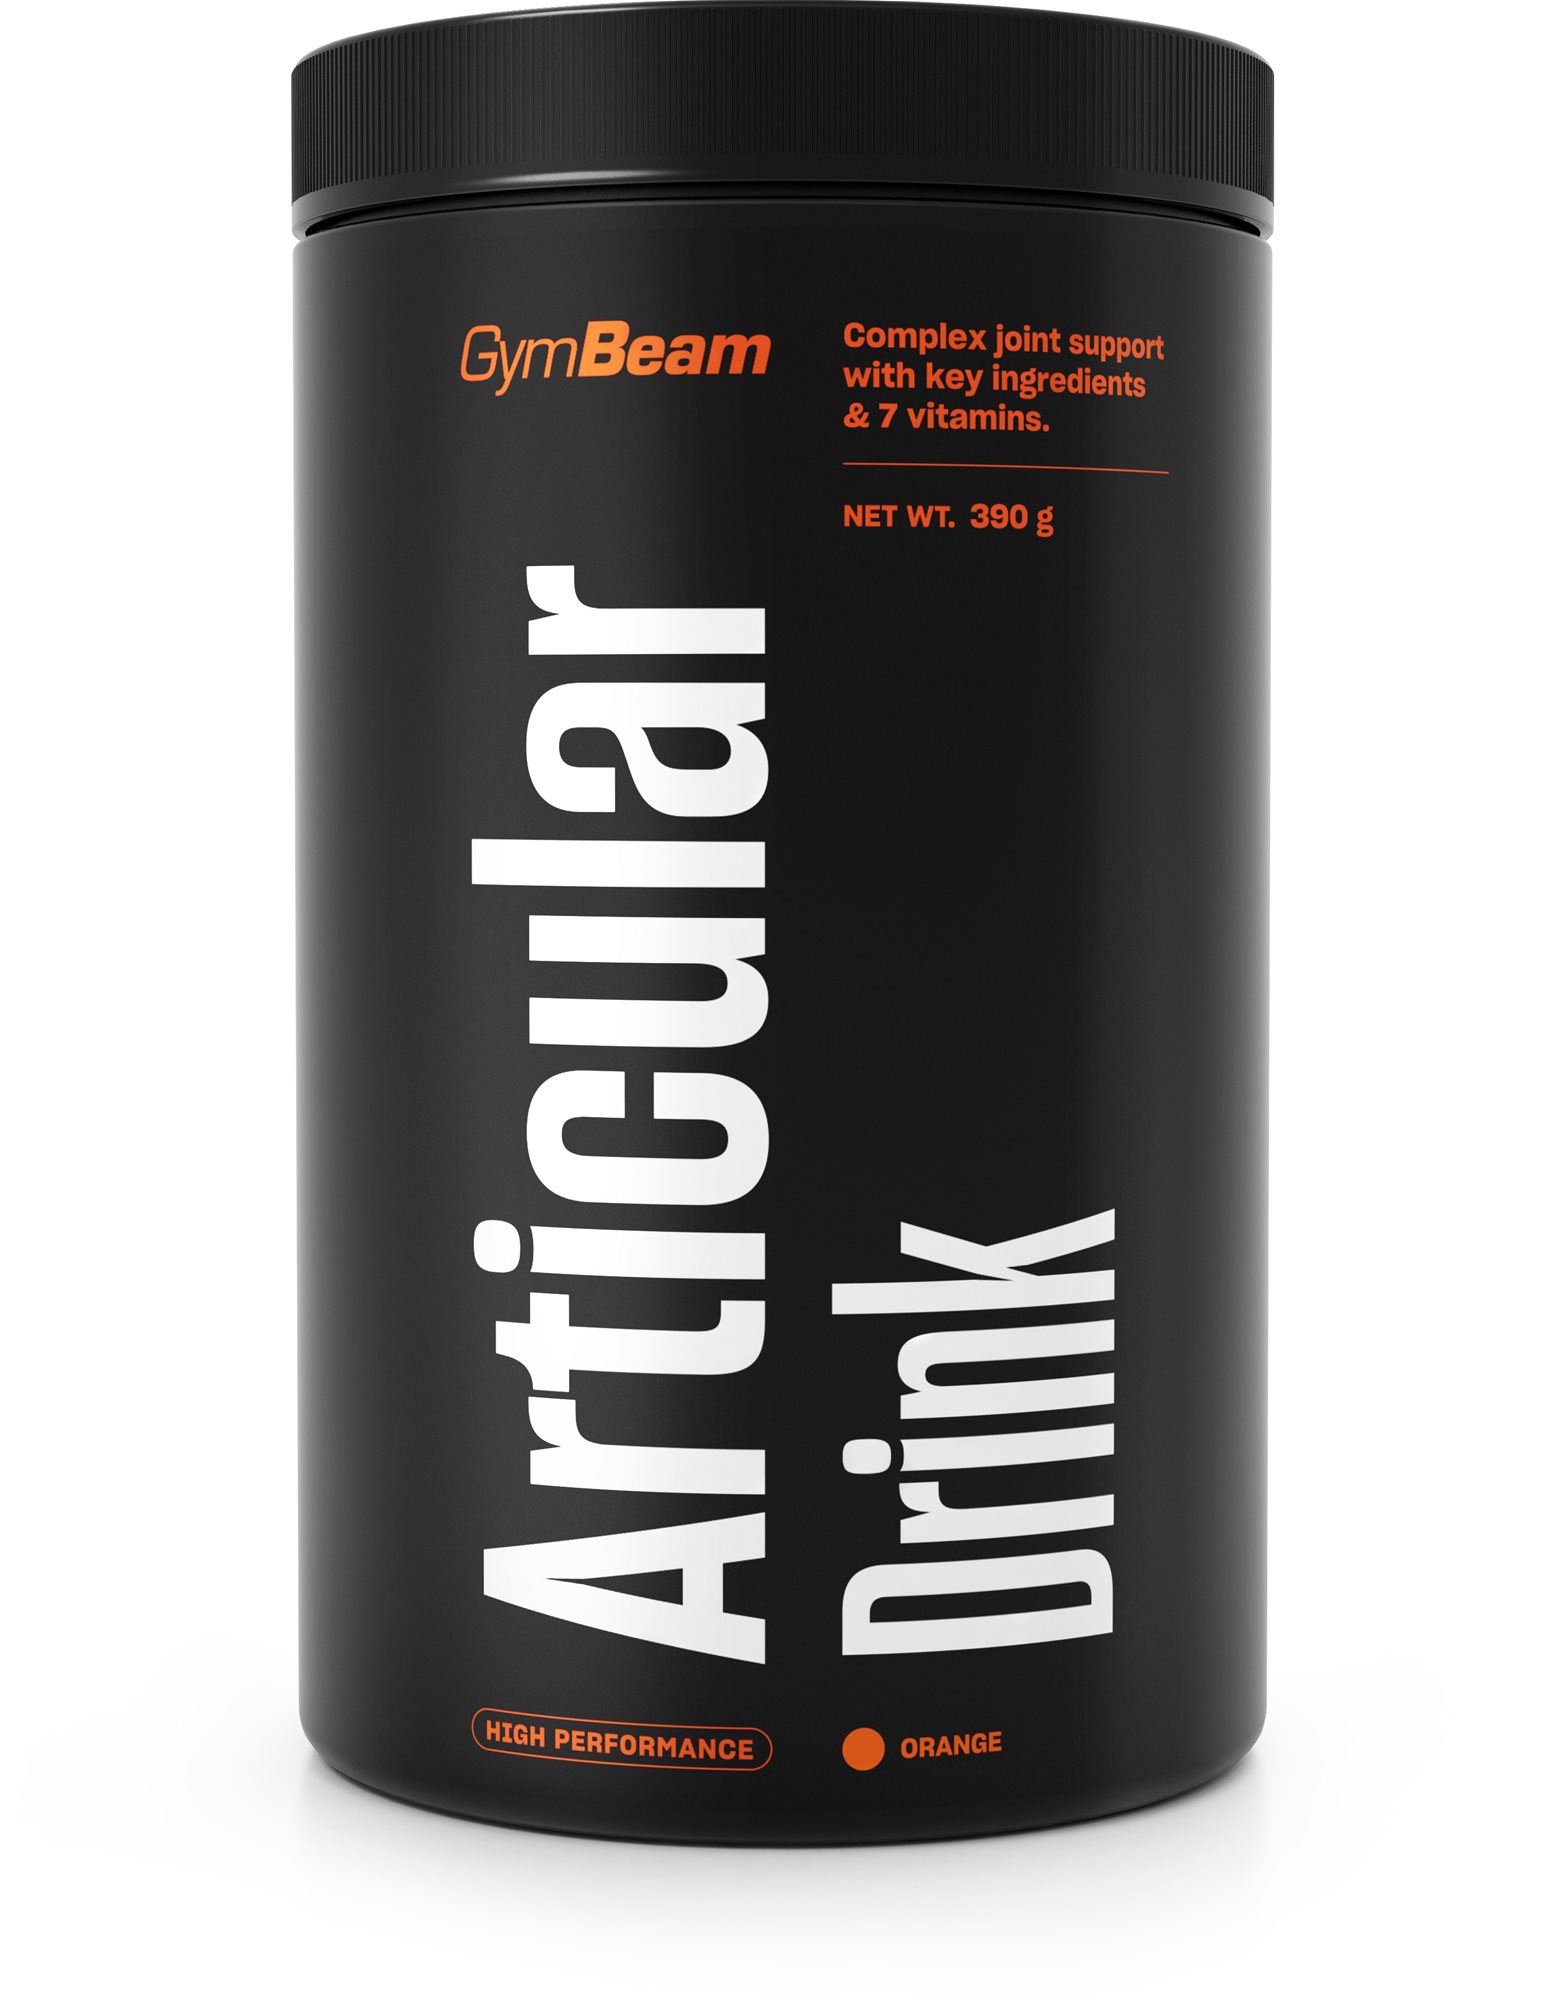 GymBeam Articular Drink 390 g, orange